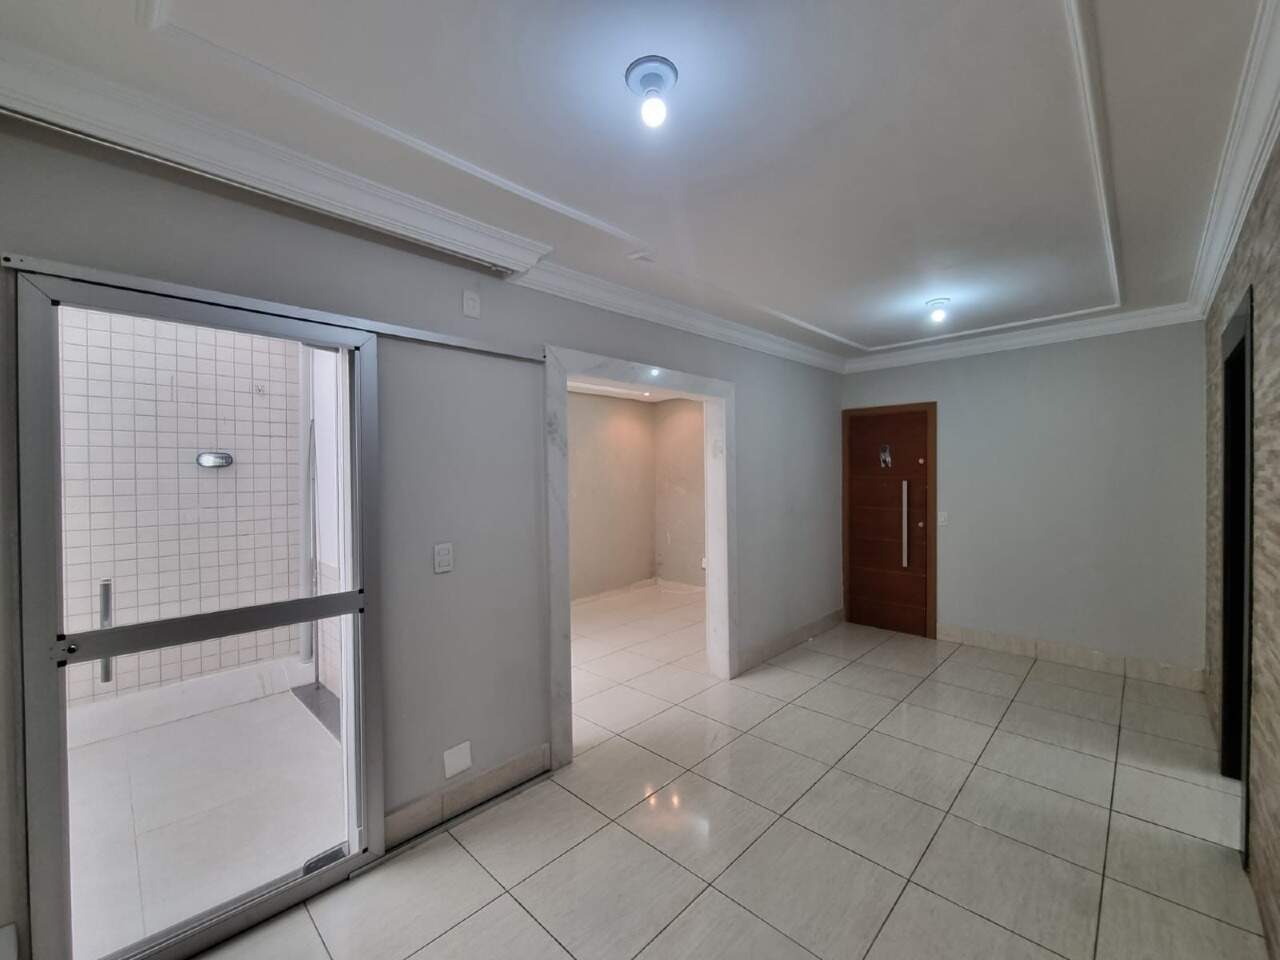 Imagem do imóvel Área privativa à venda, 3 quartos, 1 suíte, 2 vagas, Buritis - Belo Horizonte/MG